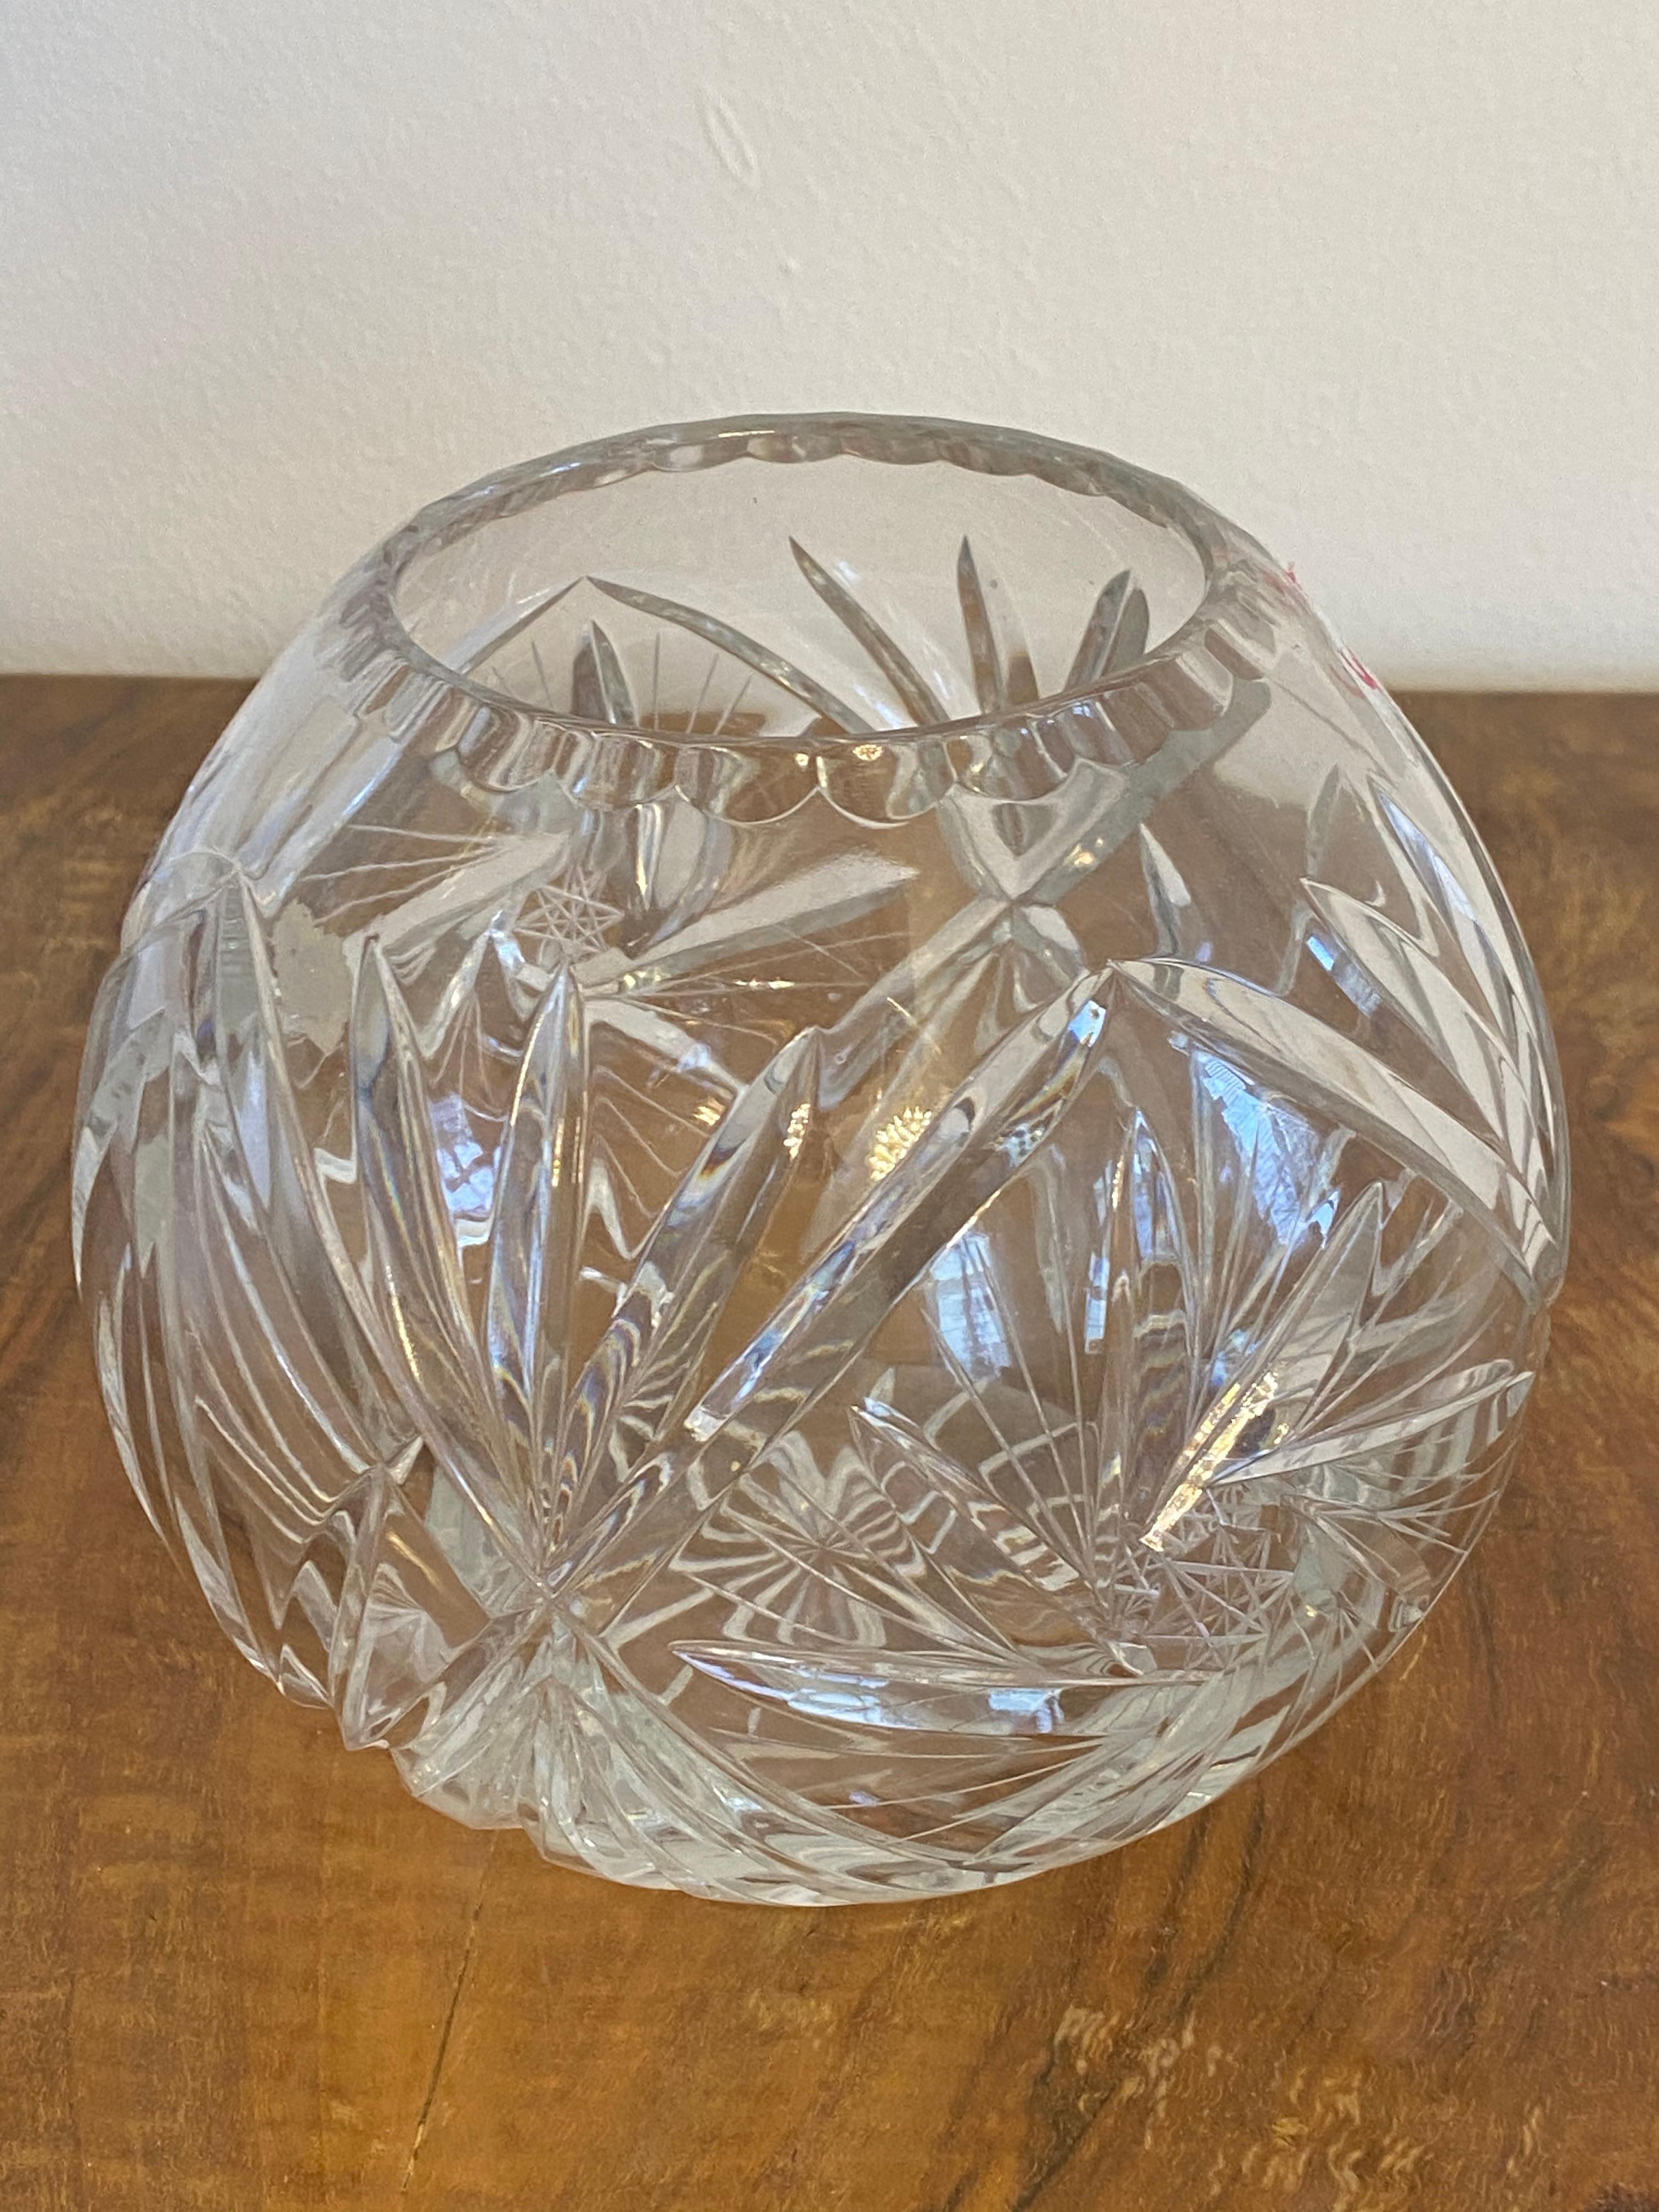 Extravagante Schale aus geschliffenem und poliertem Kristall, hergestellt in einer der böhmischen Glashütten in den 1970er Jahren.